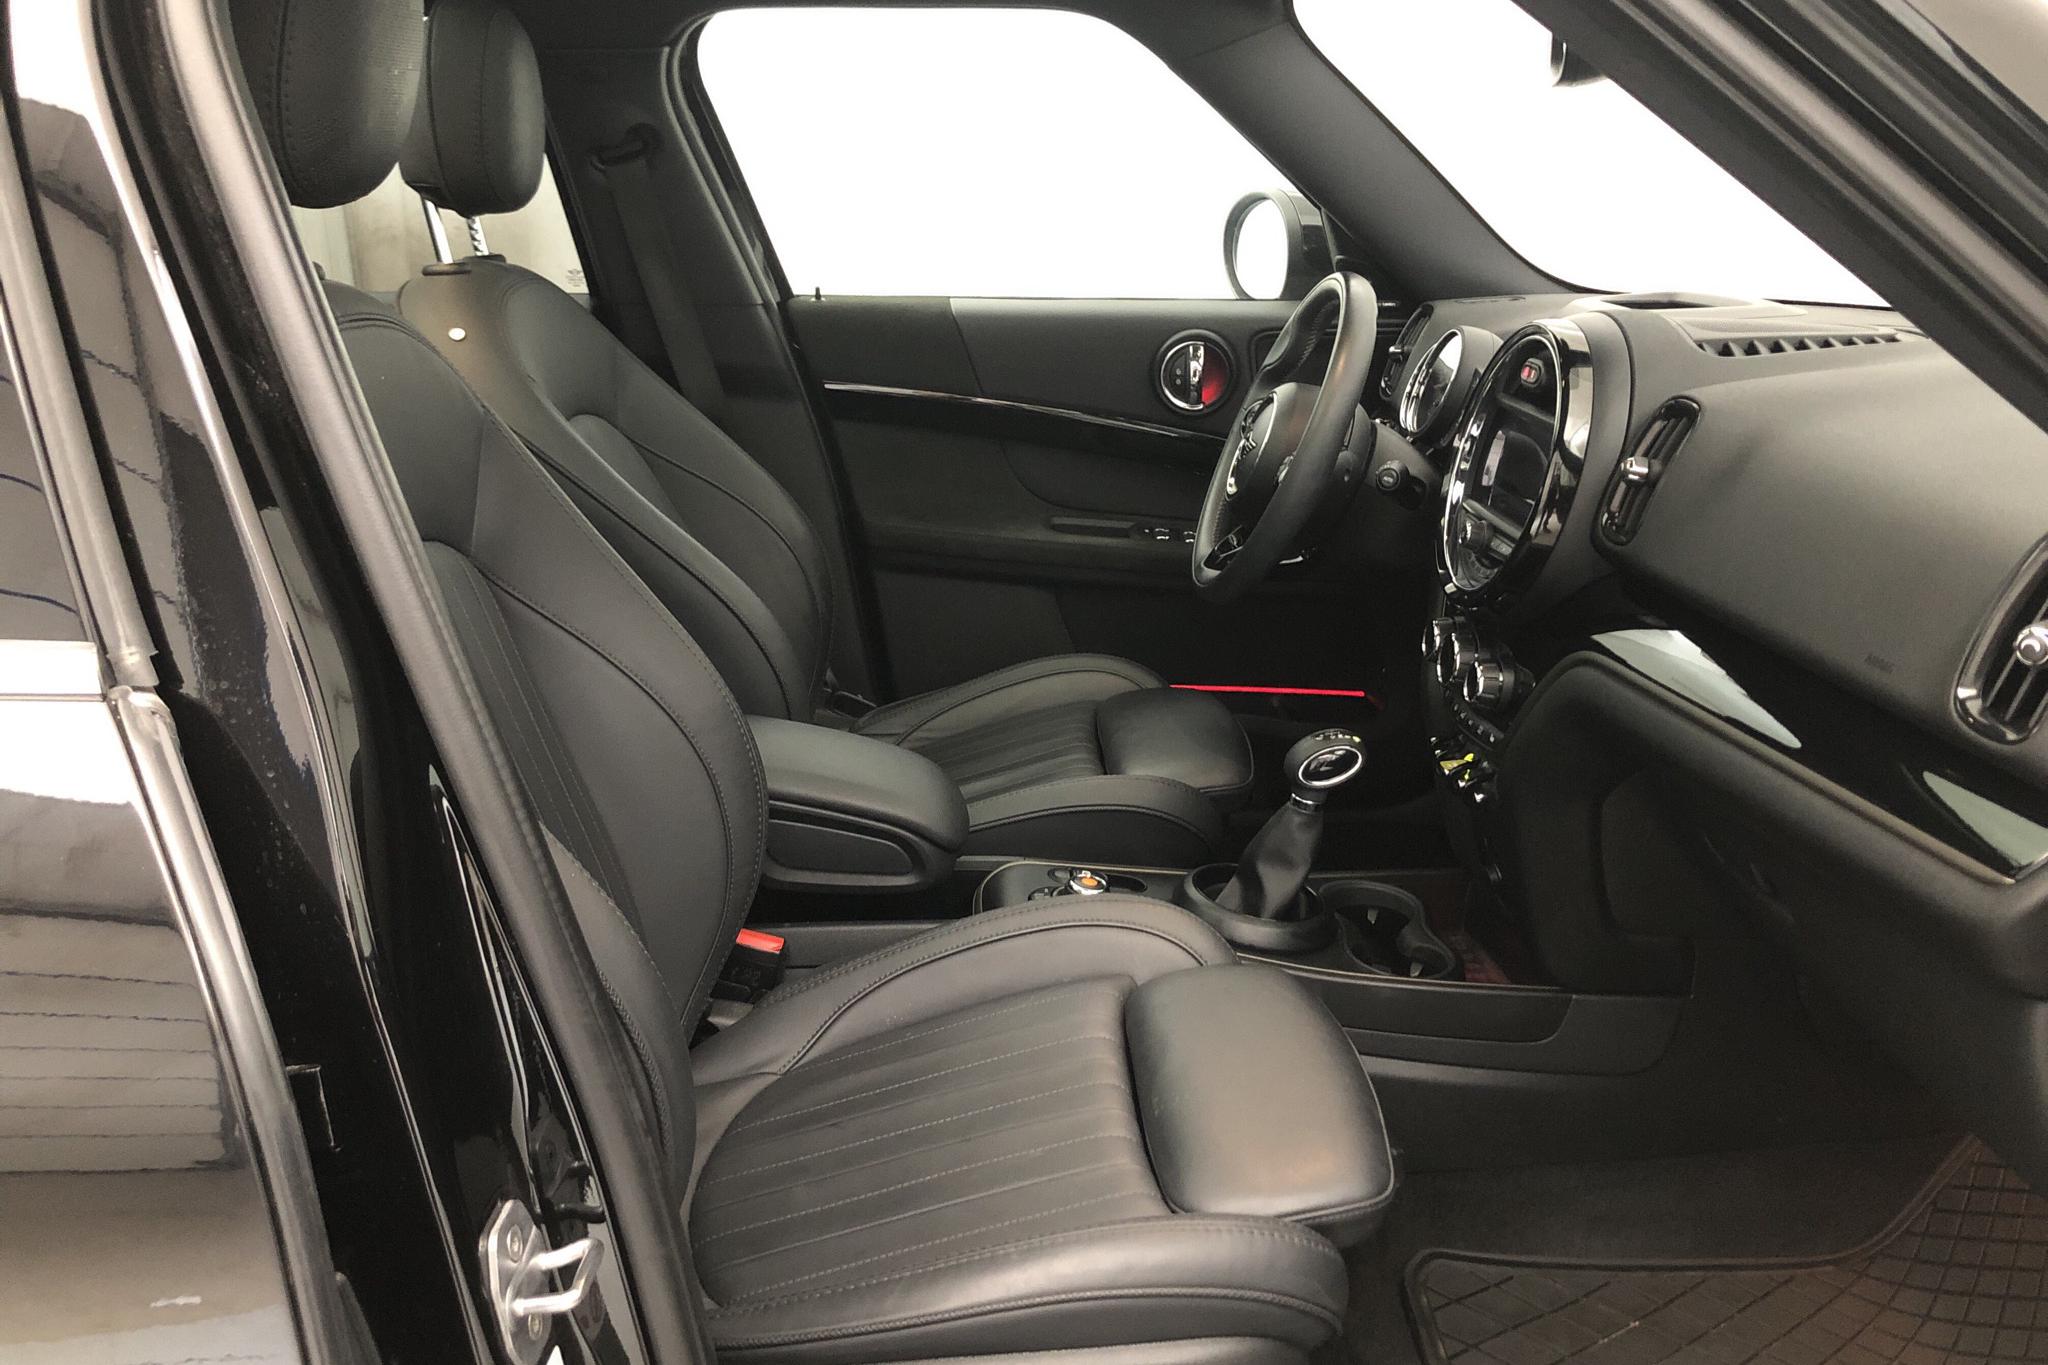 MINI Cooper S E ALL4 Countryman, F60 (224hk) - 27 530 km - Automatic - black - 2020